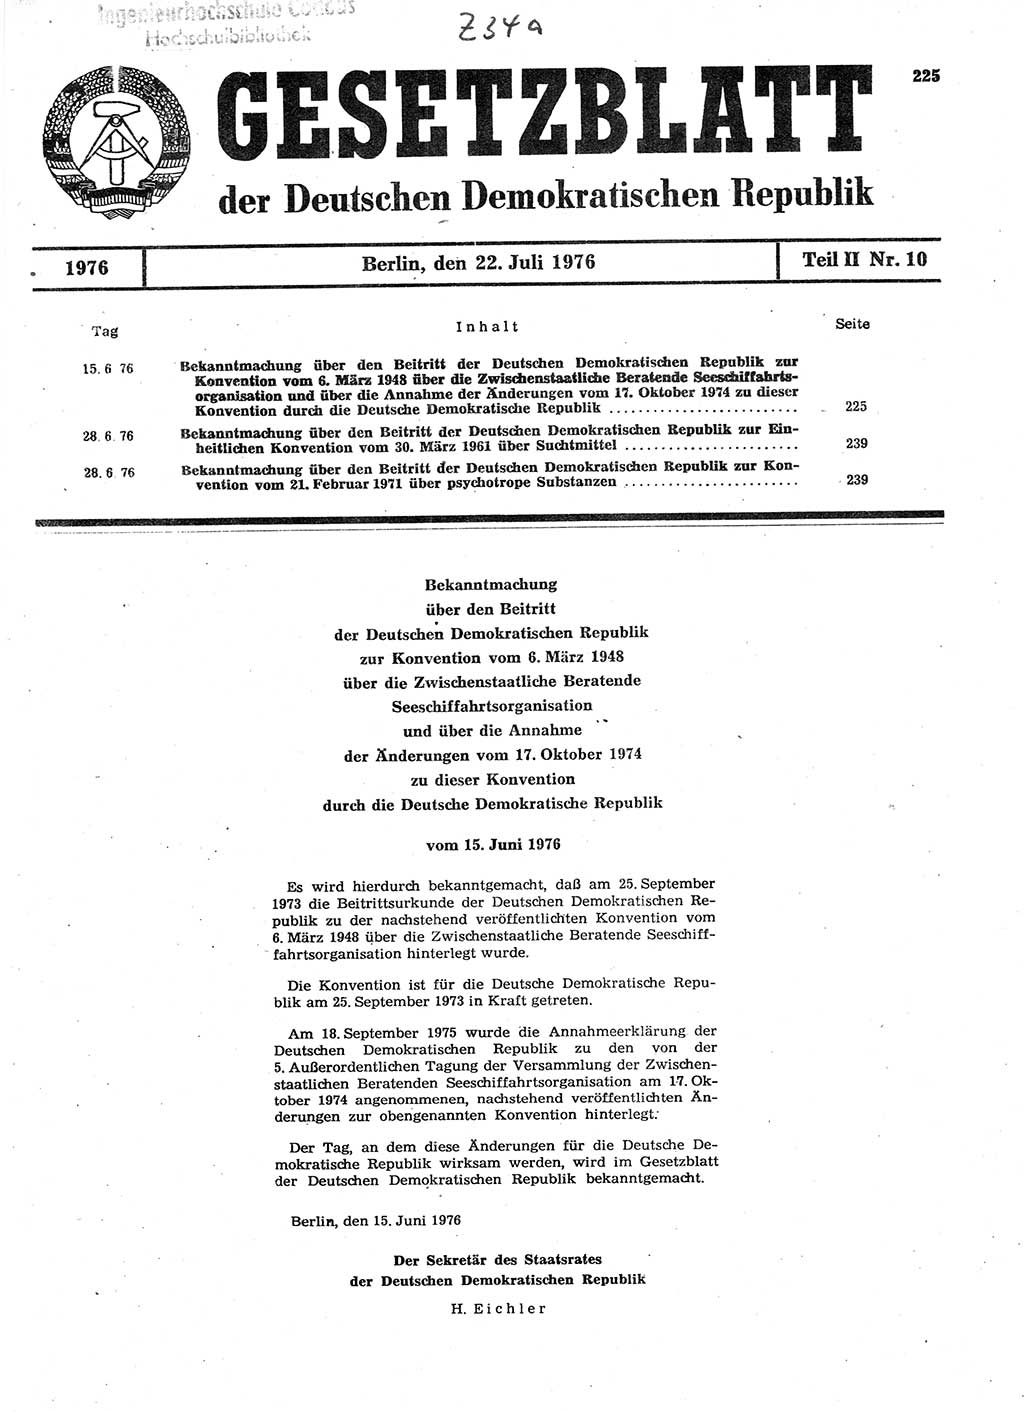 Gesetzblatt (GBl.) der Deutschen Demokratischen Republik (DDR) Teil ⅠⅠ 1976, Seite 225 (GBl. DDR ⅠⅠ 1976, S. 225)